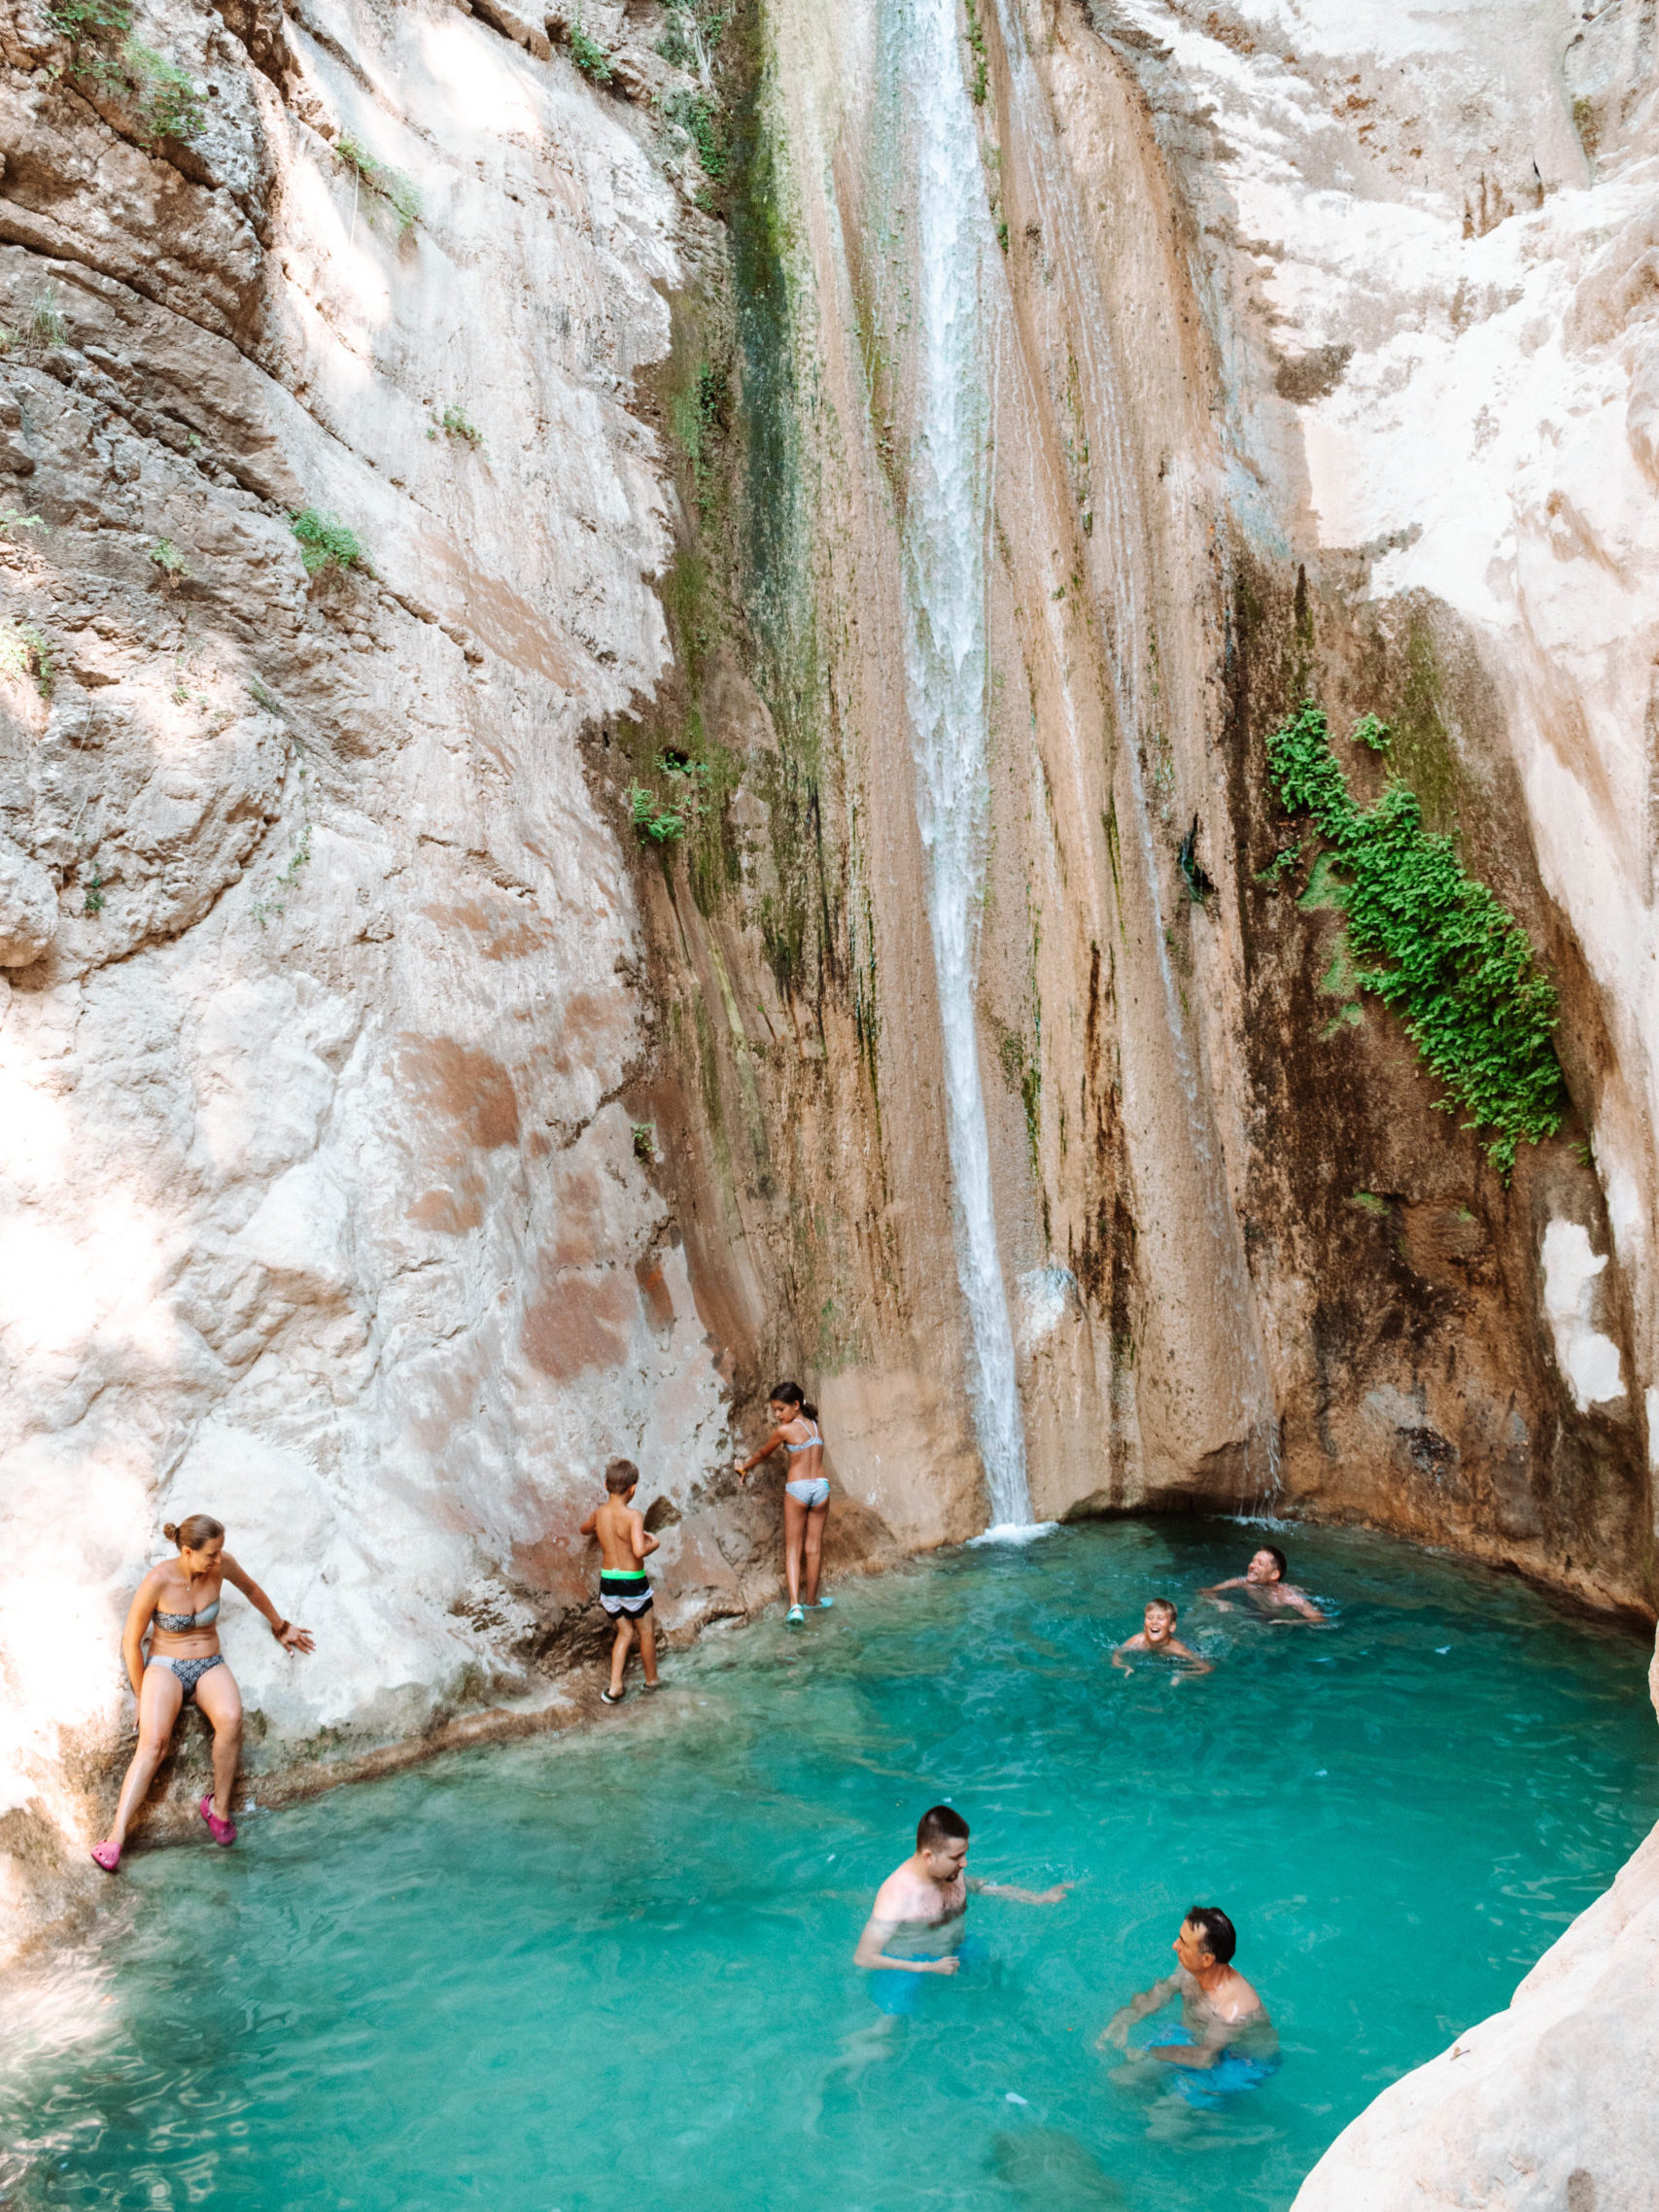 Dimosari waterfall in Lefkada Greece